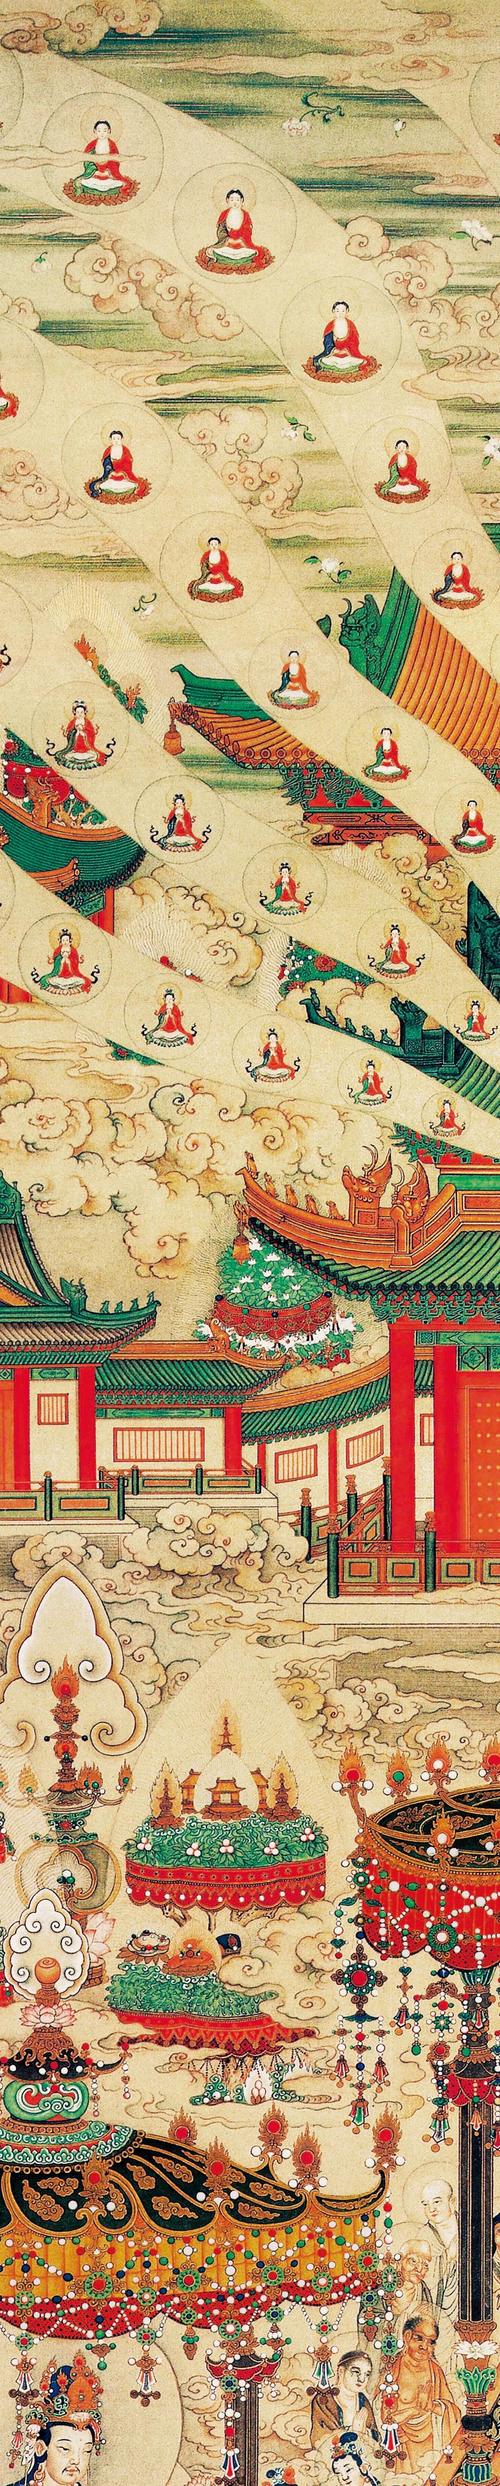 清代《极乐世界图》丁关鹏绘 台北故宫博物院藏